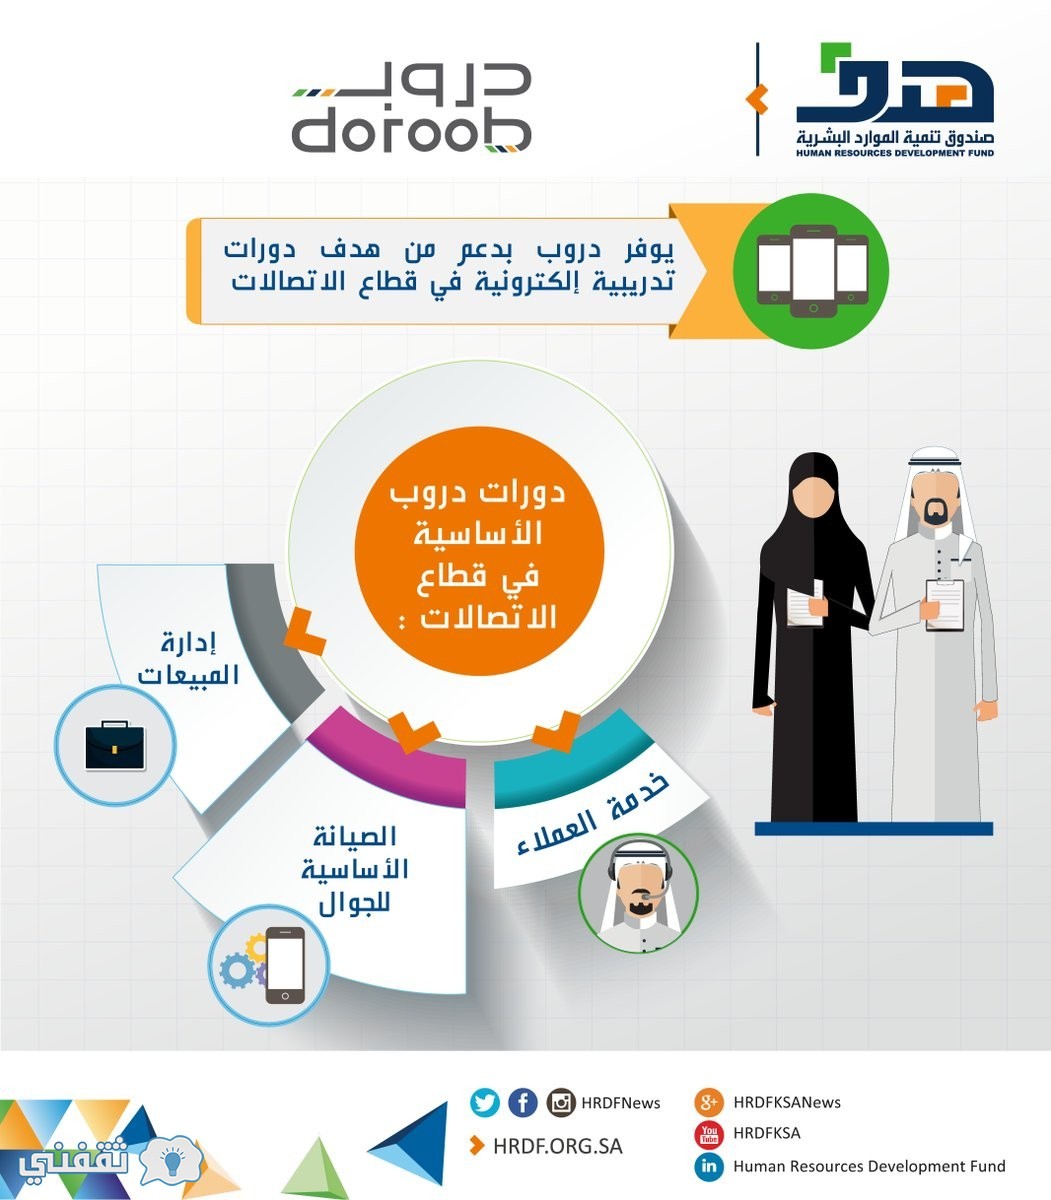 وزارة العمل والتنمية الاجتماعية تطور مهارات مليون سعودي عبر دورة دروب لعام 2020